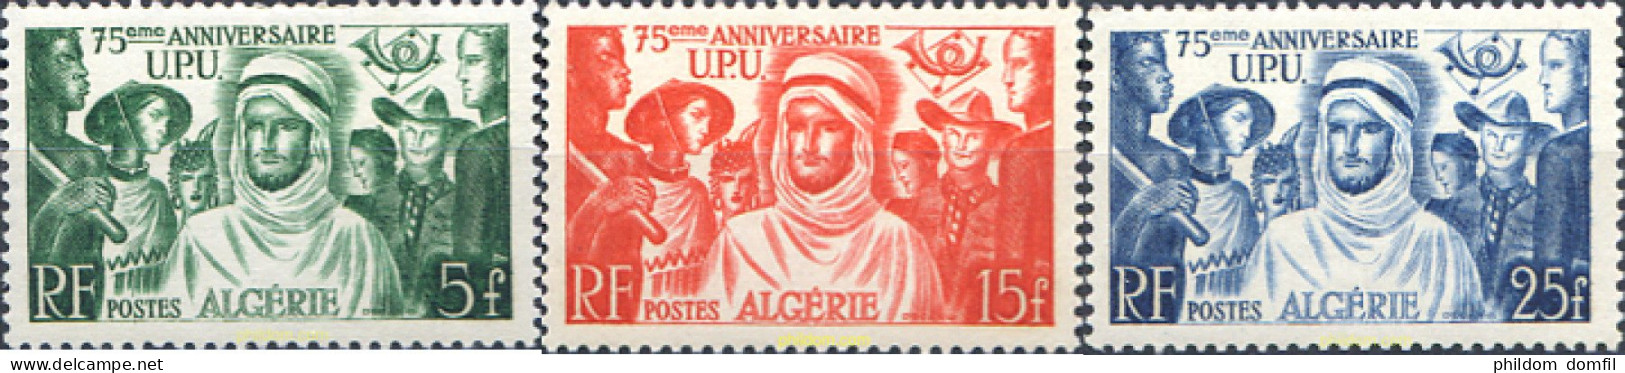 343182 HINGED ARGELIA 1949 75 ANIVERSARIO DE LA UNION POSTAL UNIVERSAL - Algeria (1962-...)